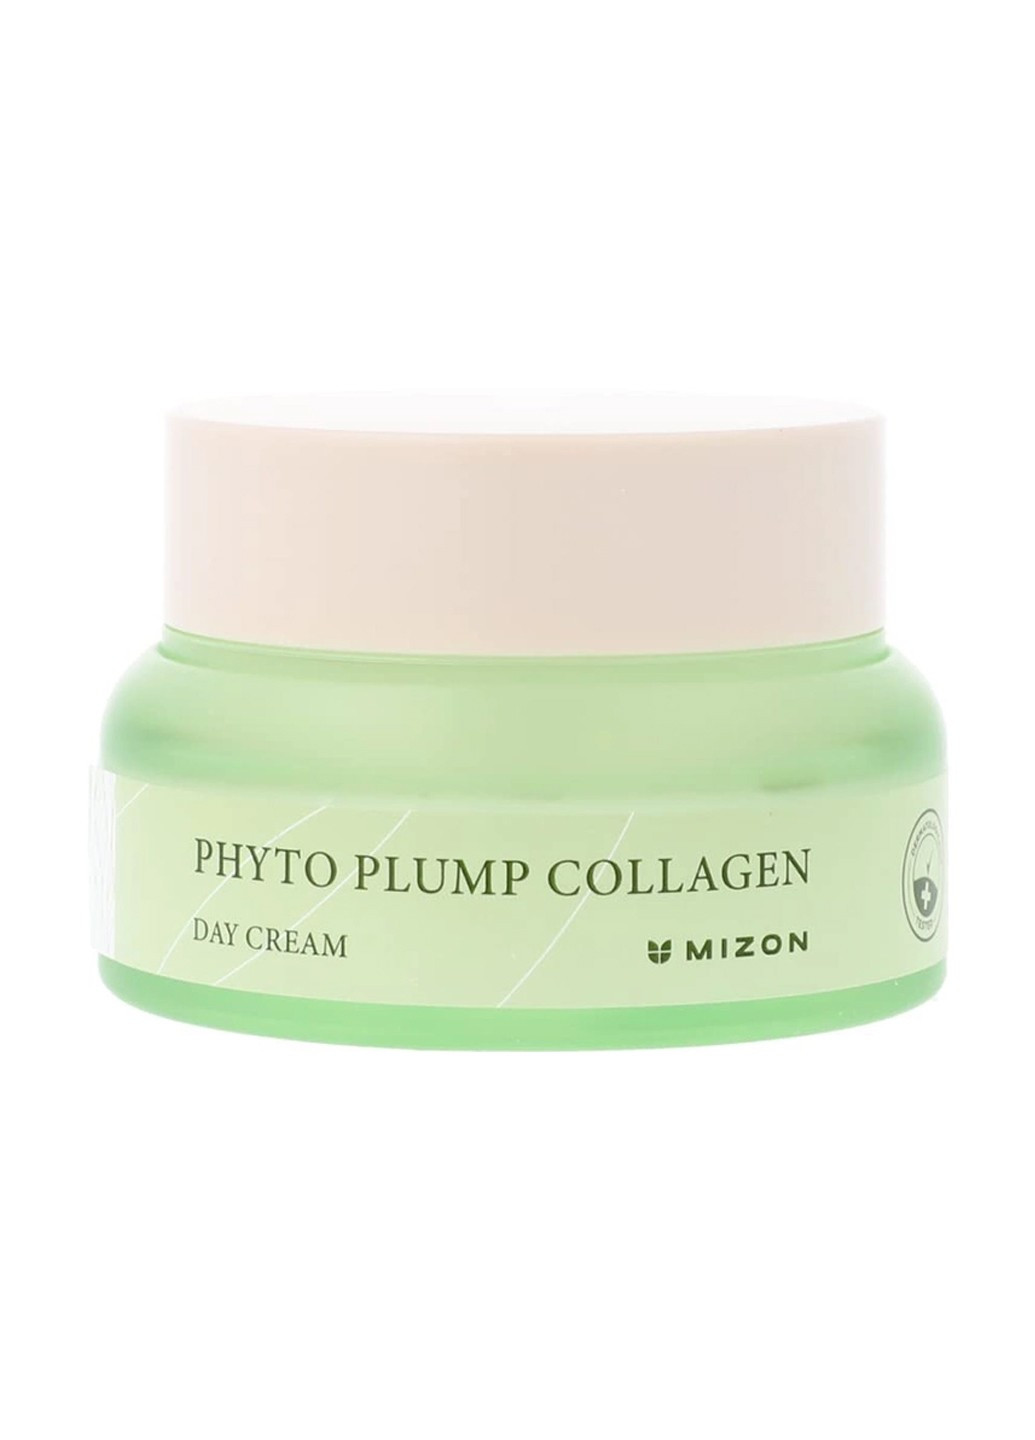 Дневной крем для лица Phyto Plump Collagen Day Cream с фитоколлагеном 50 мл Mizon (264668739)